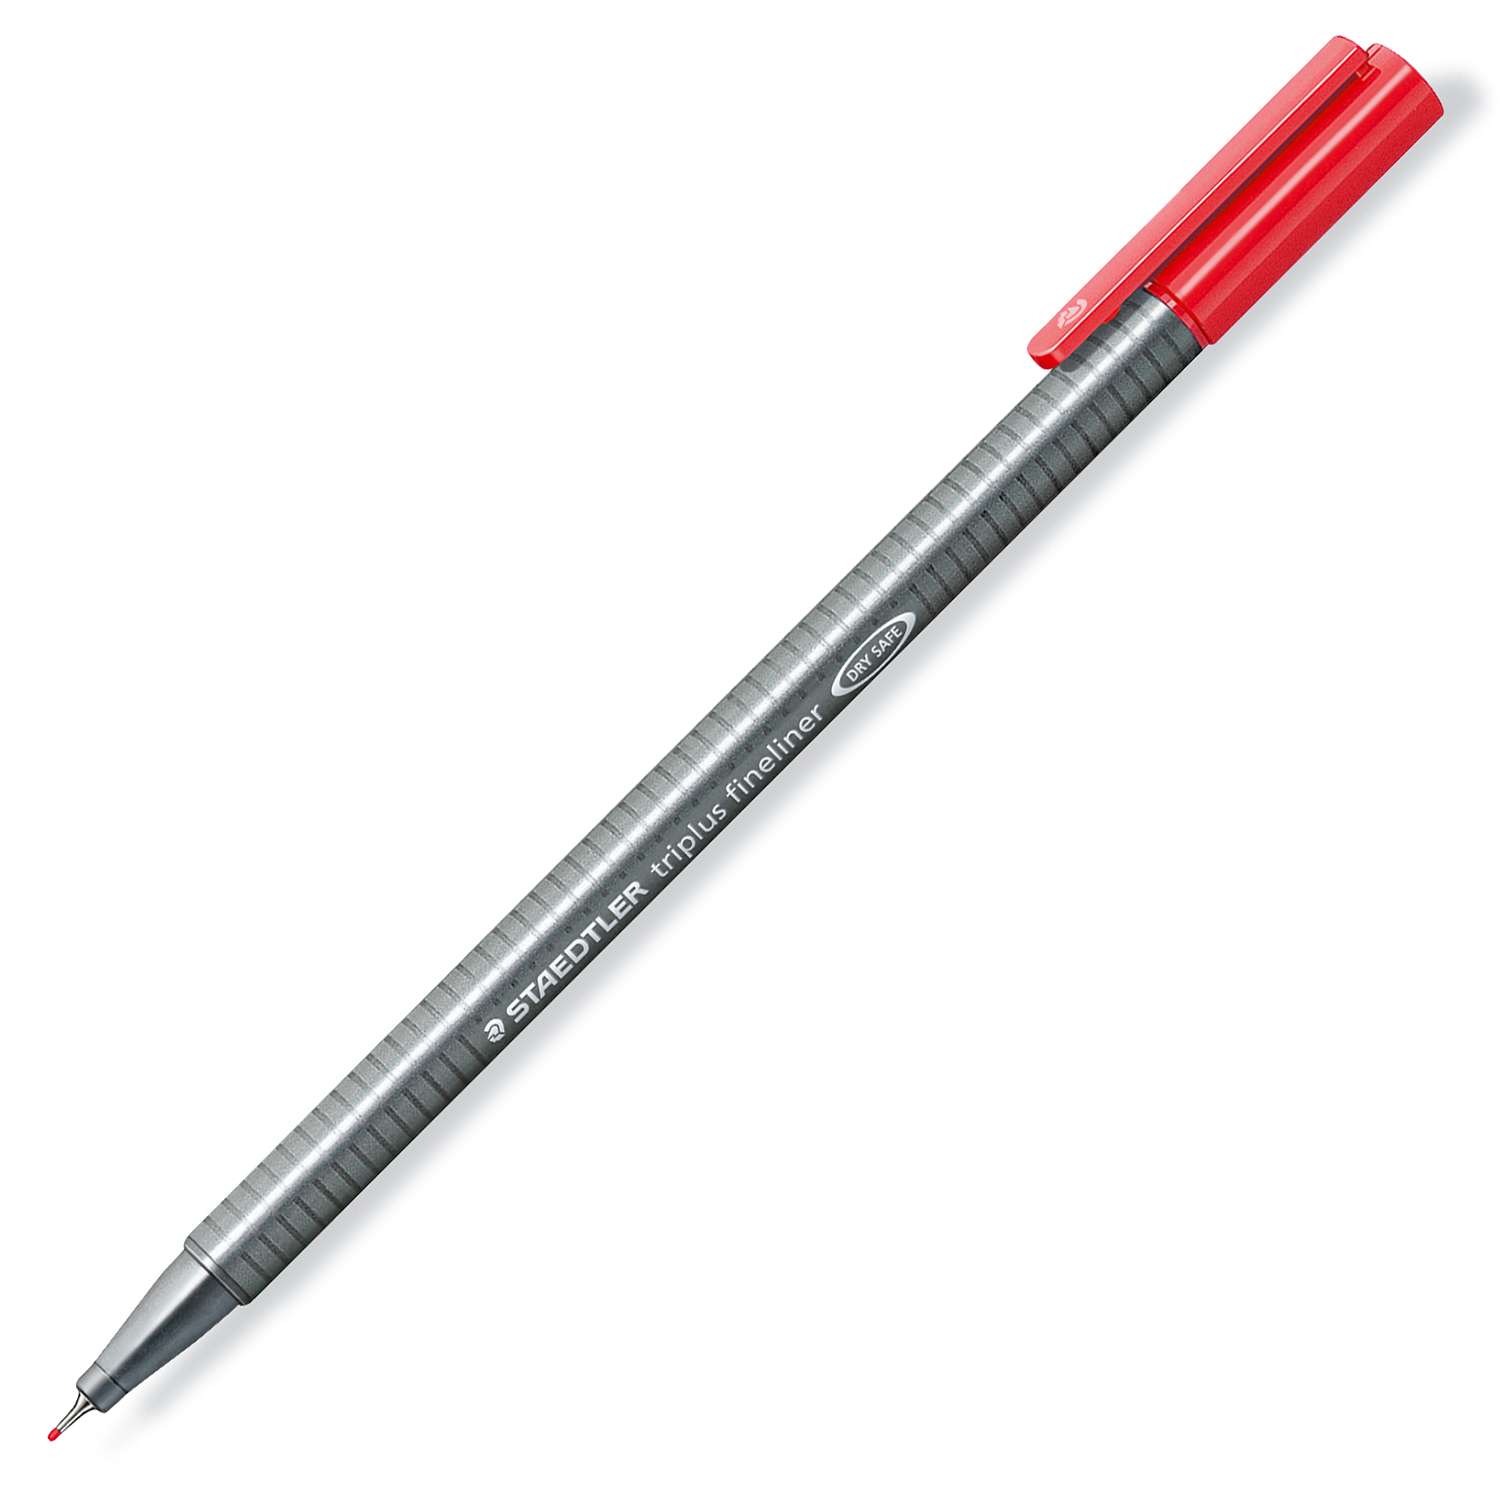 Ручка капиллярная Staedtler Triplus трехгранная Красная - фото 1